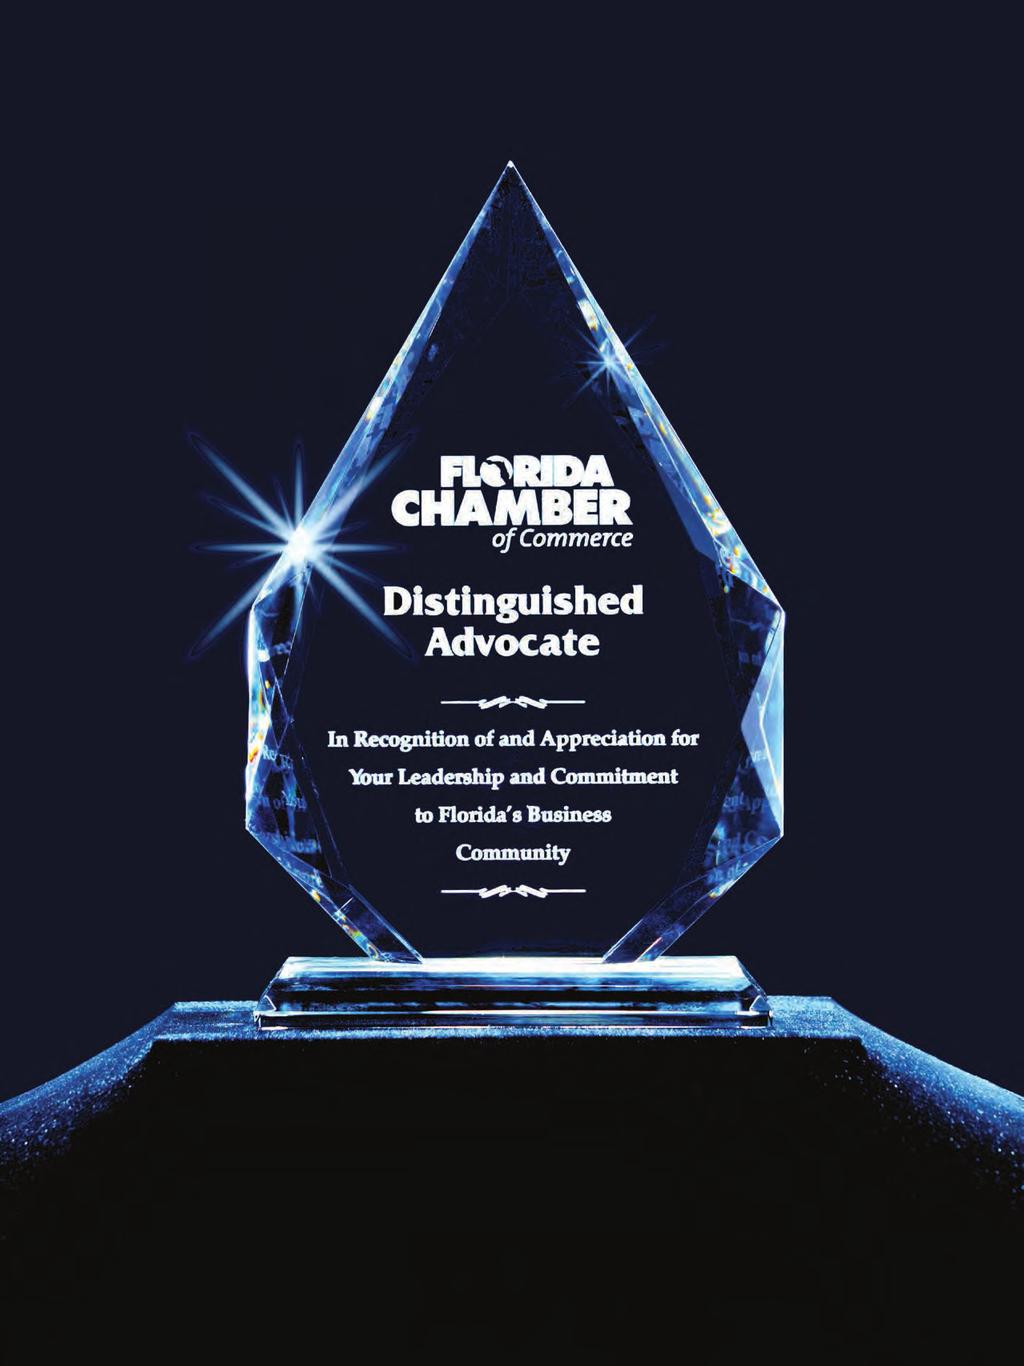 Distinguished Advocate Awards The Florida Chamber s Distinguished Advocate Award recognizes legislators who championed key Florida Business Agenda legislation.